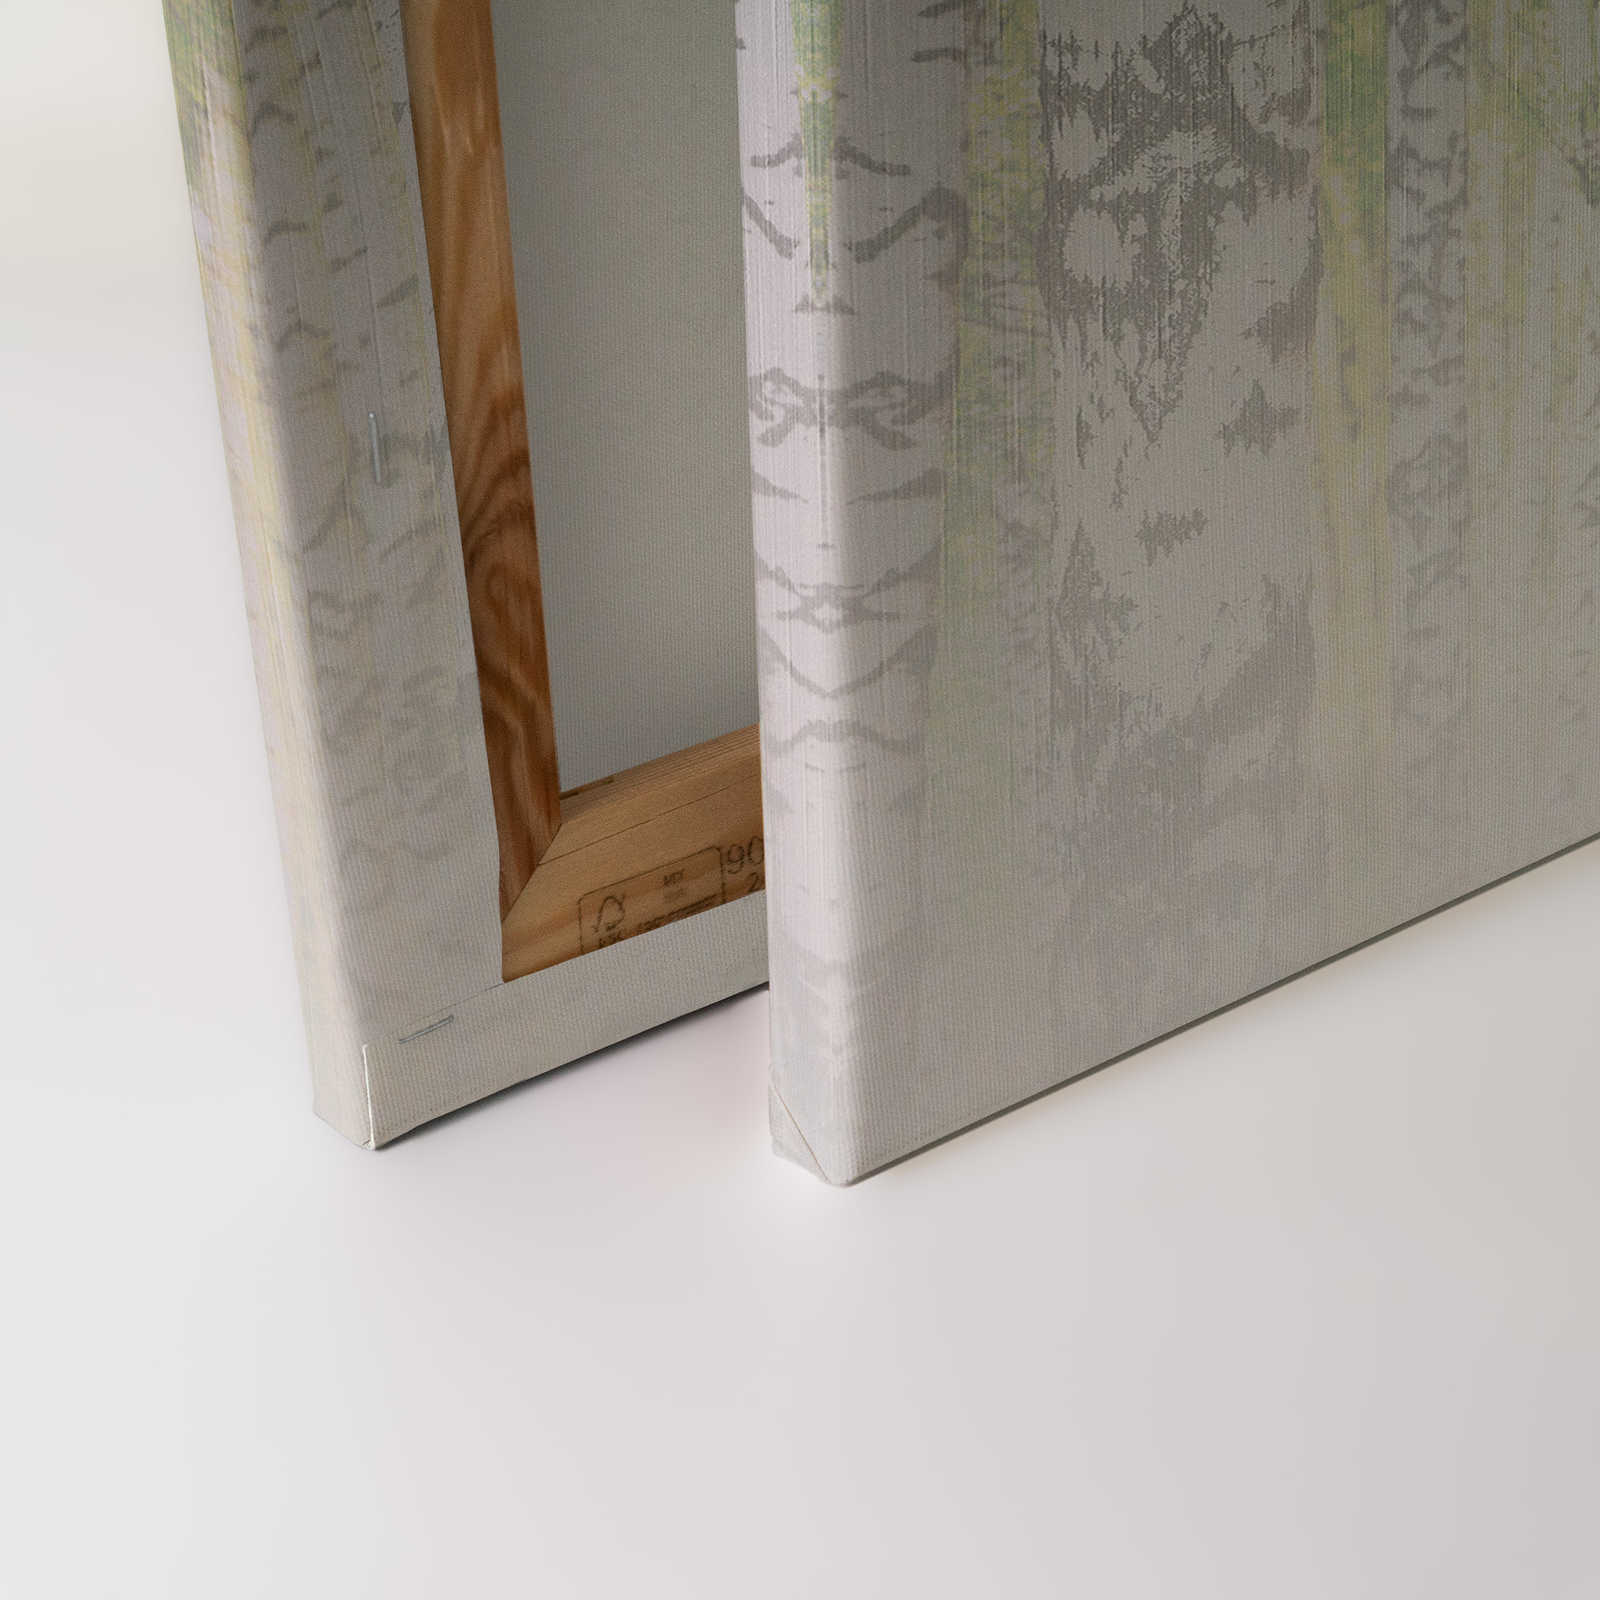             Tableau toile avec forêt de bouleaux à l'aspect structuré de lin - 0,90 m x 0,60 m
        